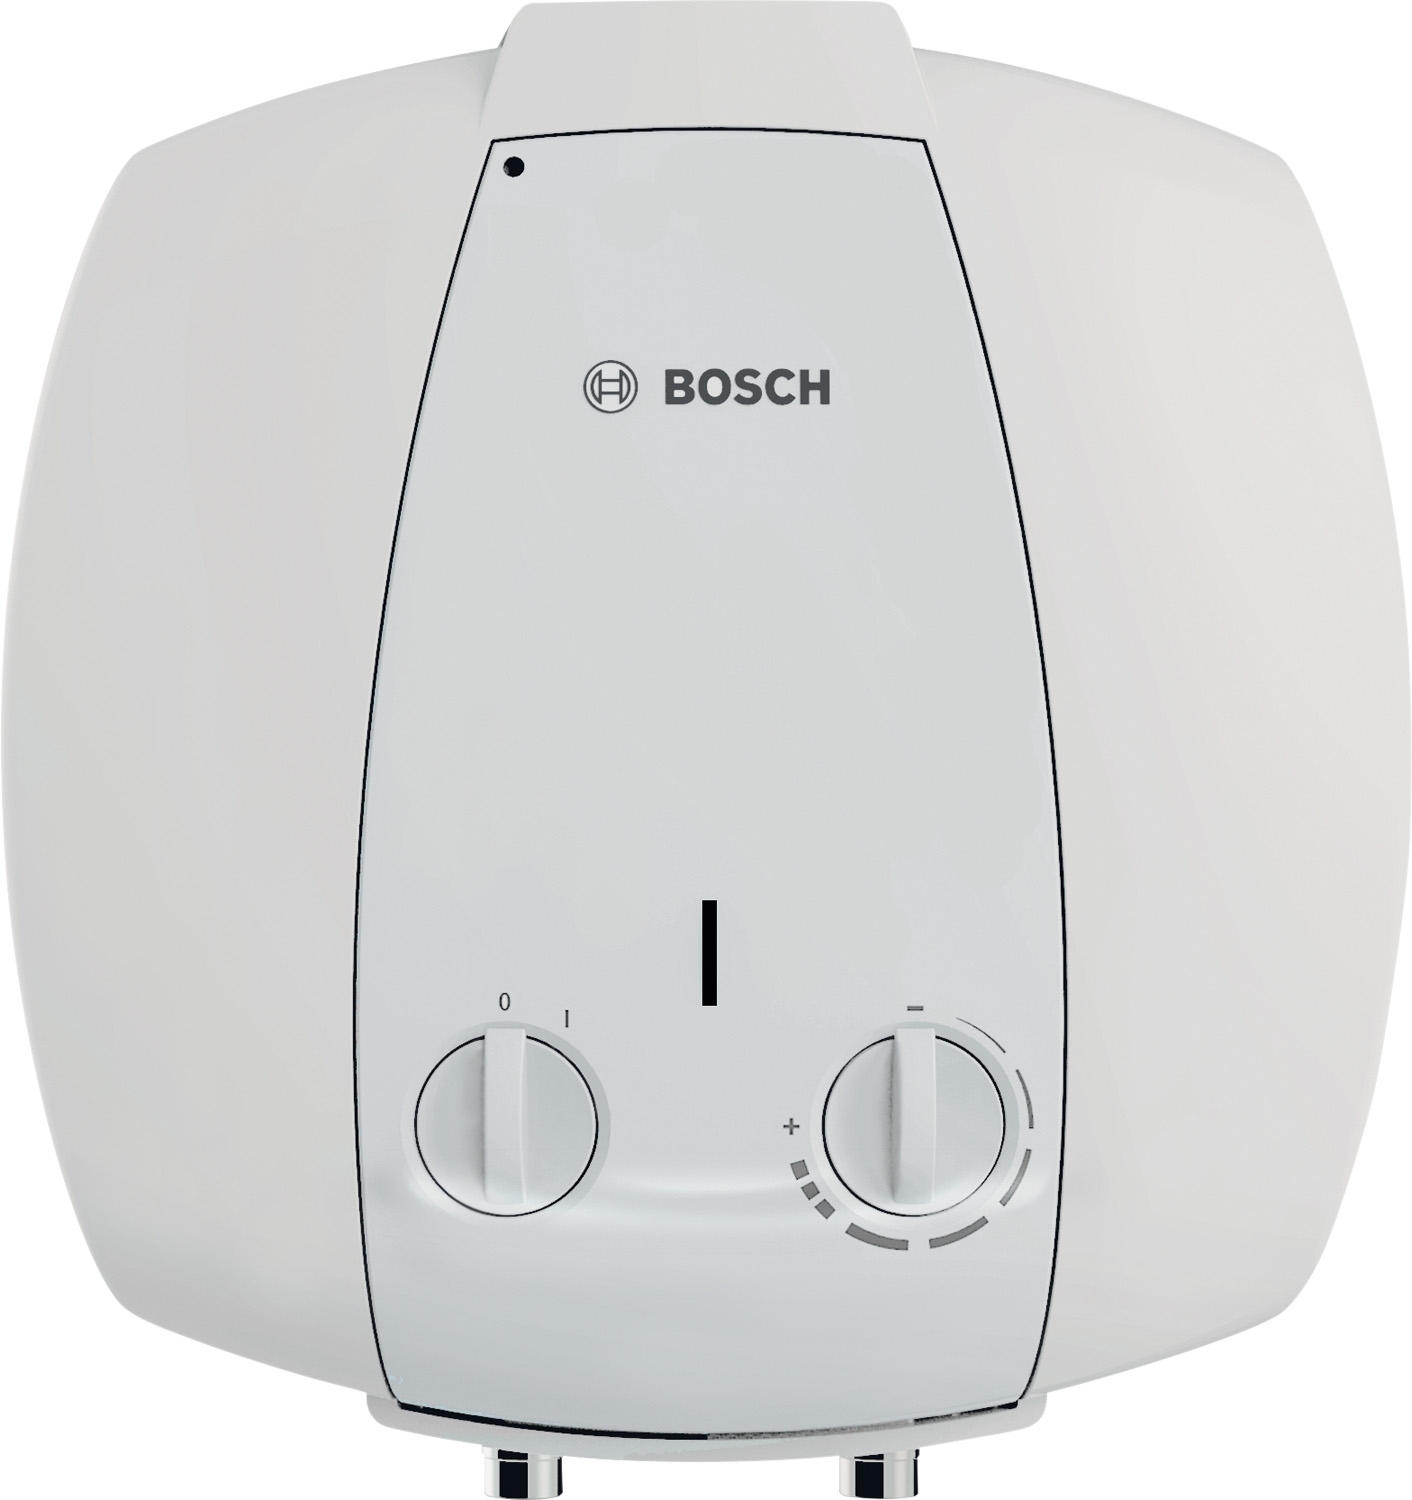 Отзывы бойлер bosch на 10 литров Bosch TR 2000 T 10 B (7736504745) в Украине